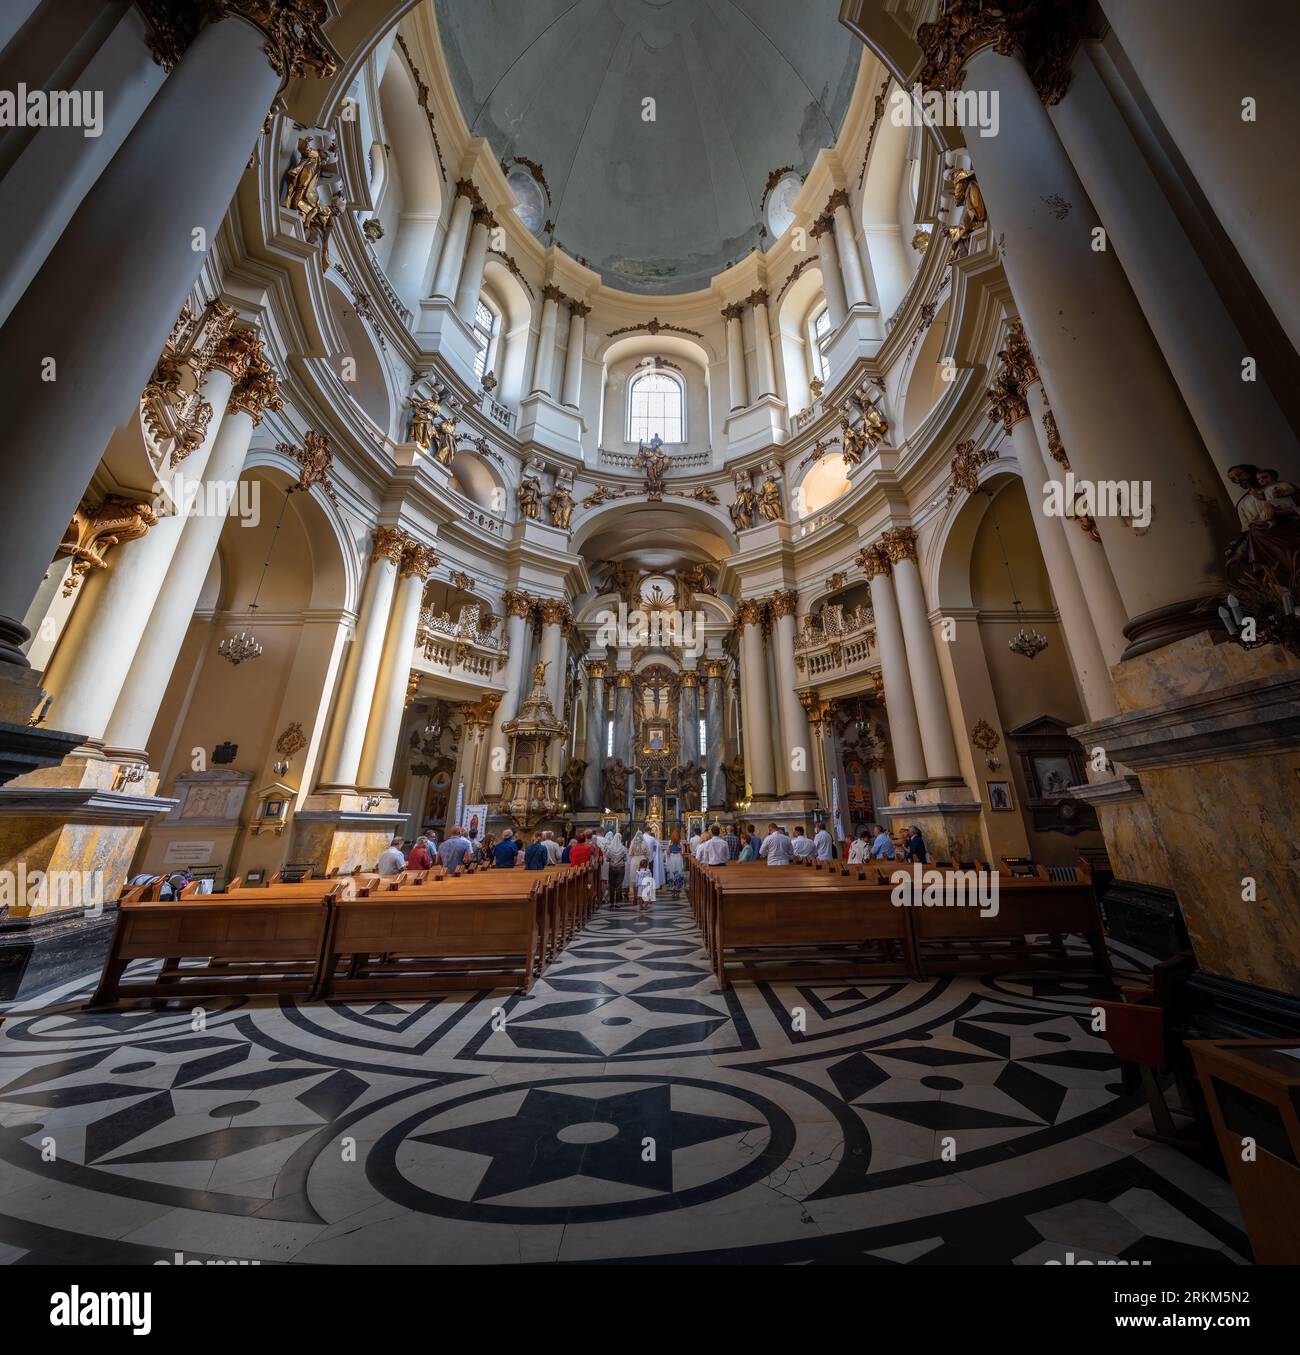 Intérieur de l'Église dominicaine (Église grecque catholique de la Sainte Eucharistie) - Lviv, Ukraine Banque D'Images